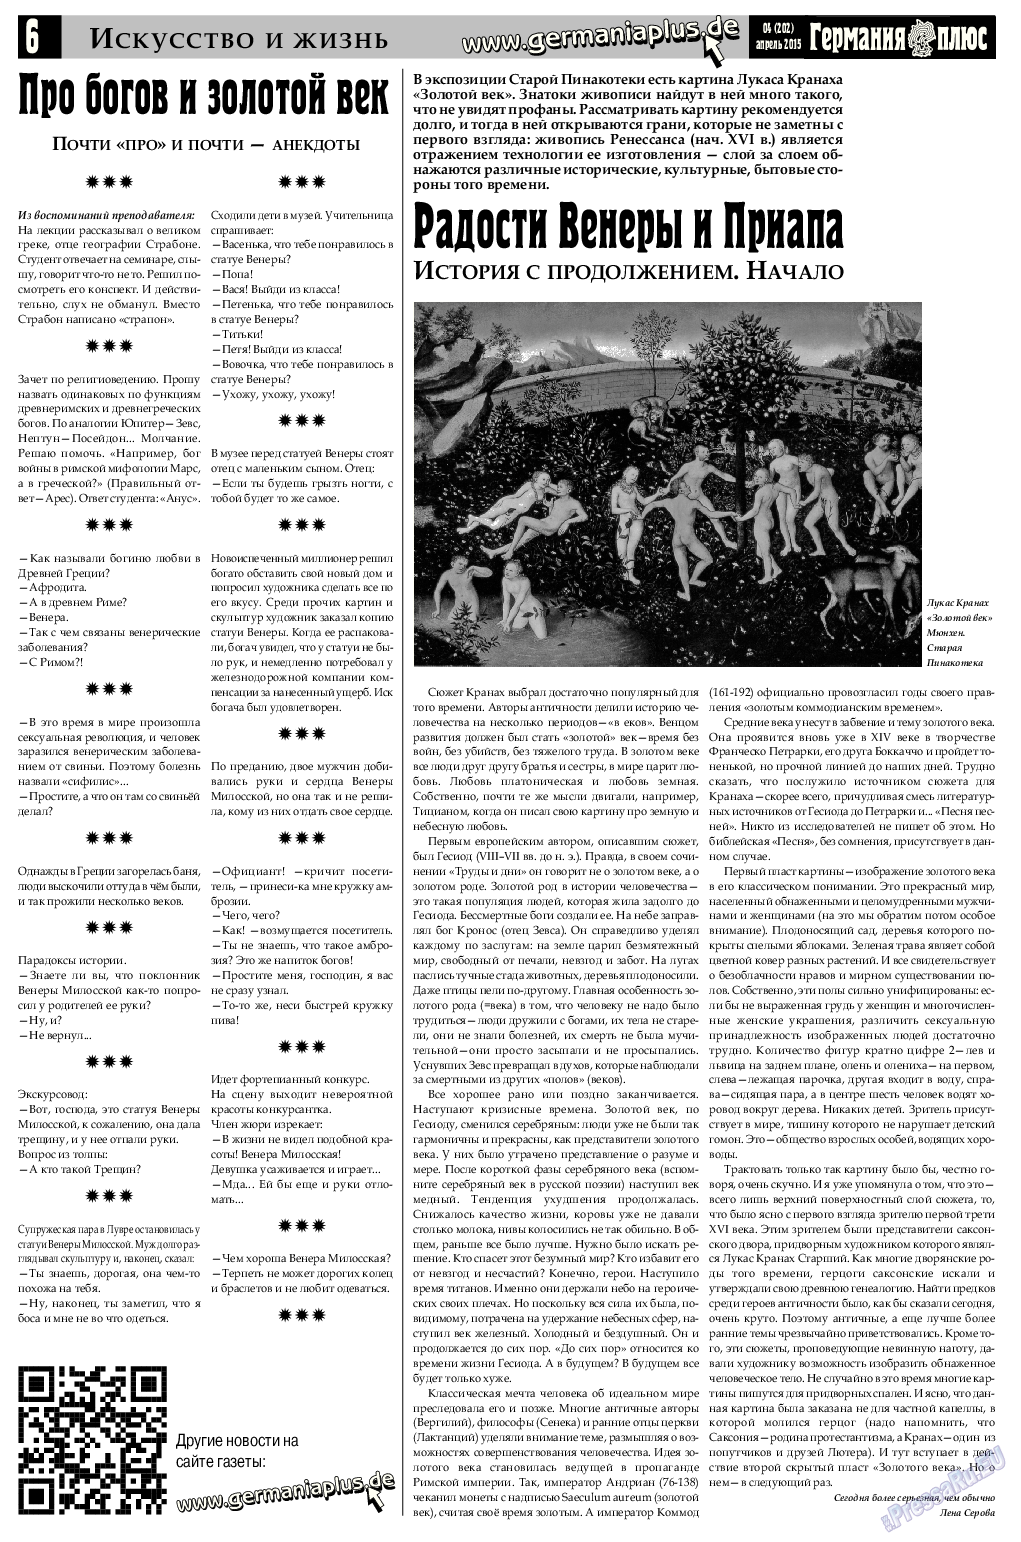 Германия плюс, газета. 2015 №4 стр.6